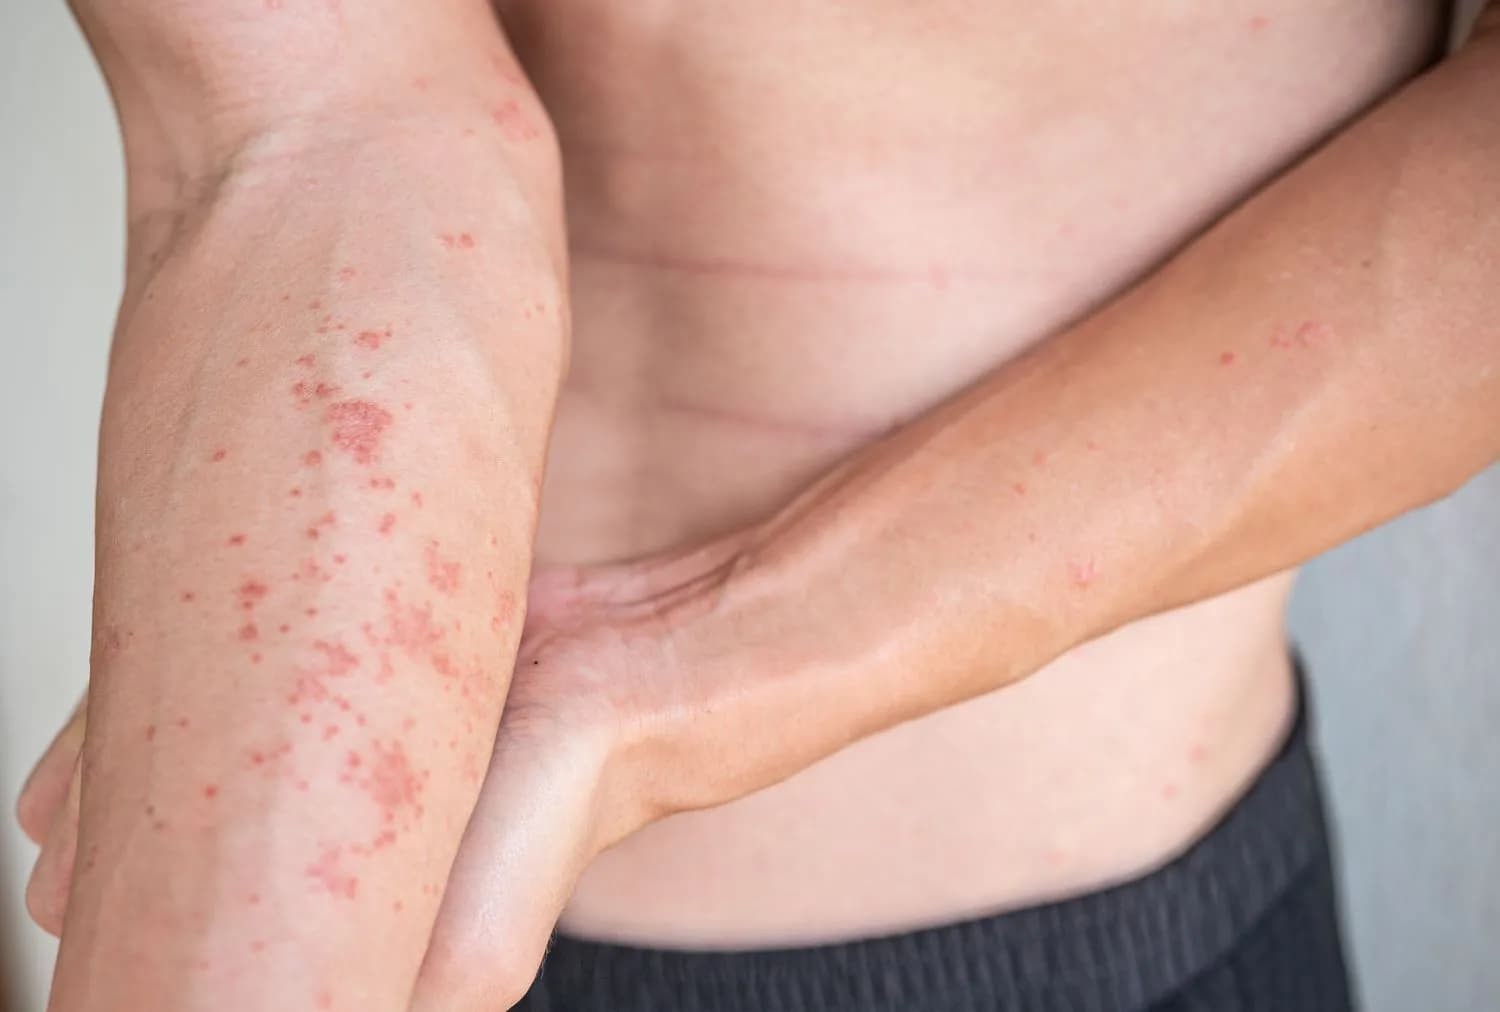 Nếu xảy ra tình trạng kích ứng, mẩn đỏ da khi sử dụng củ ráy cần đến bệnh viện thăm khám